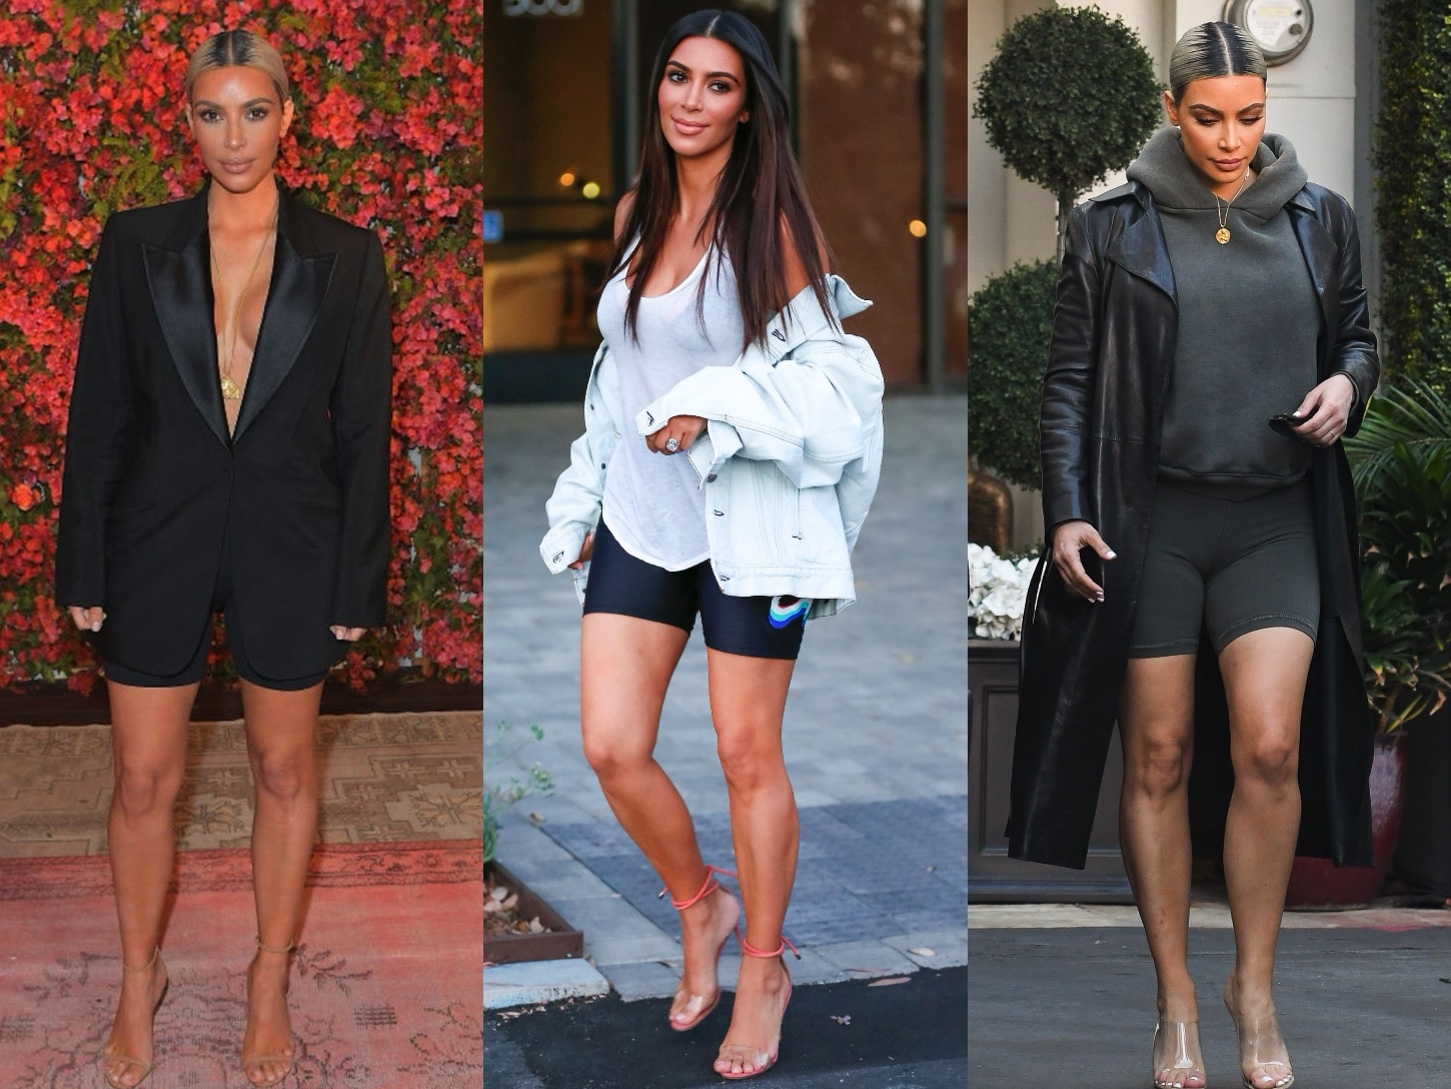 Một trong những sao nữ nổi tiếng nhiệt tình 'lăng xê' mốt quần biker nhất chính là Kim Kardashian. Chỉ với những chiếc quần đơn giản, cô nàng đã mix với nhiều item khác và sáng tạo nên những bộ outfit đầy ấn tượng